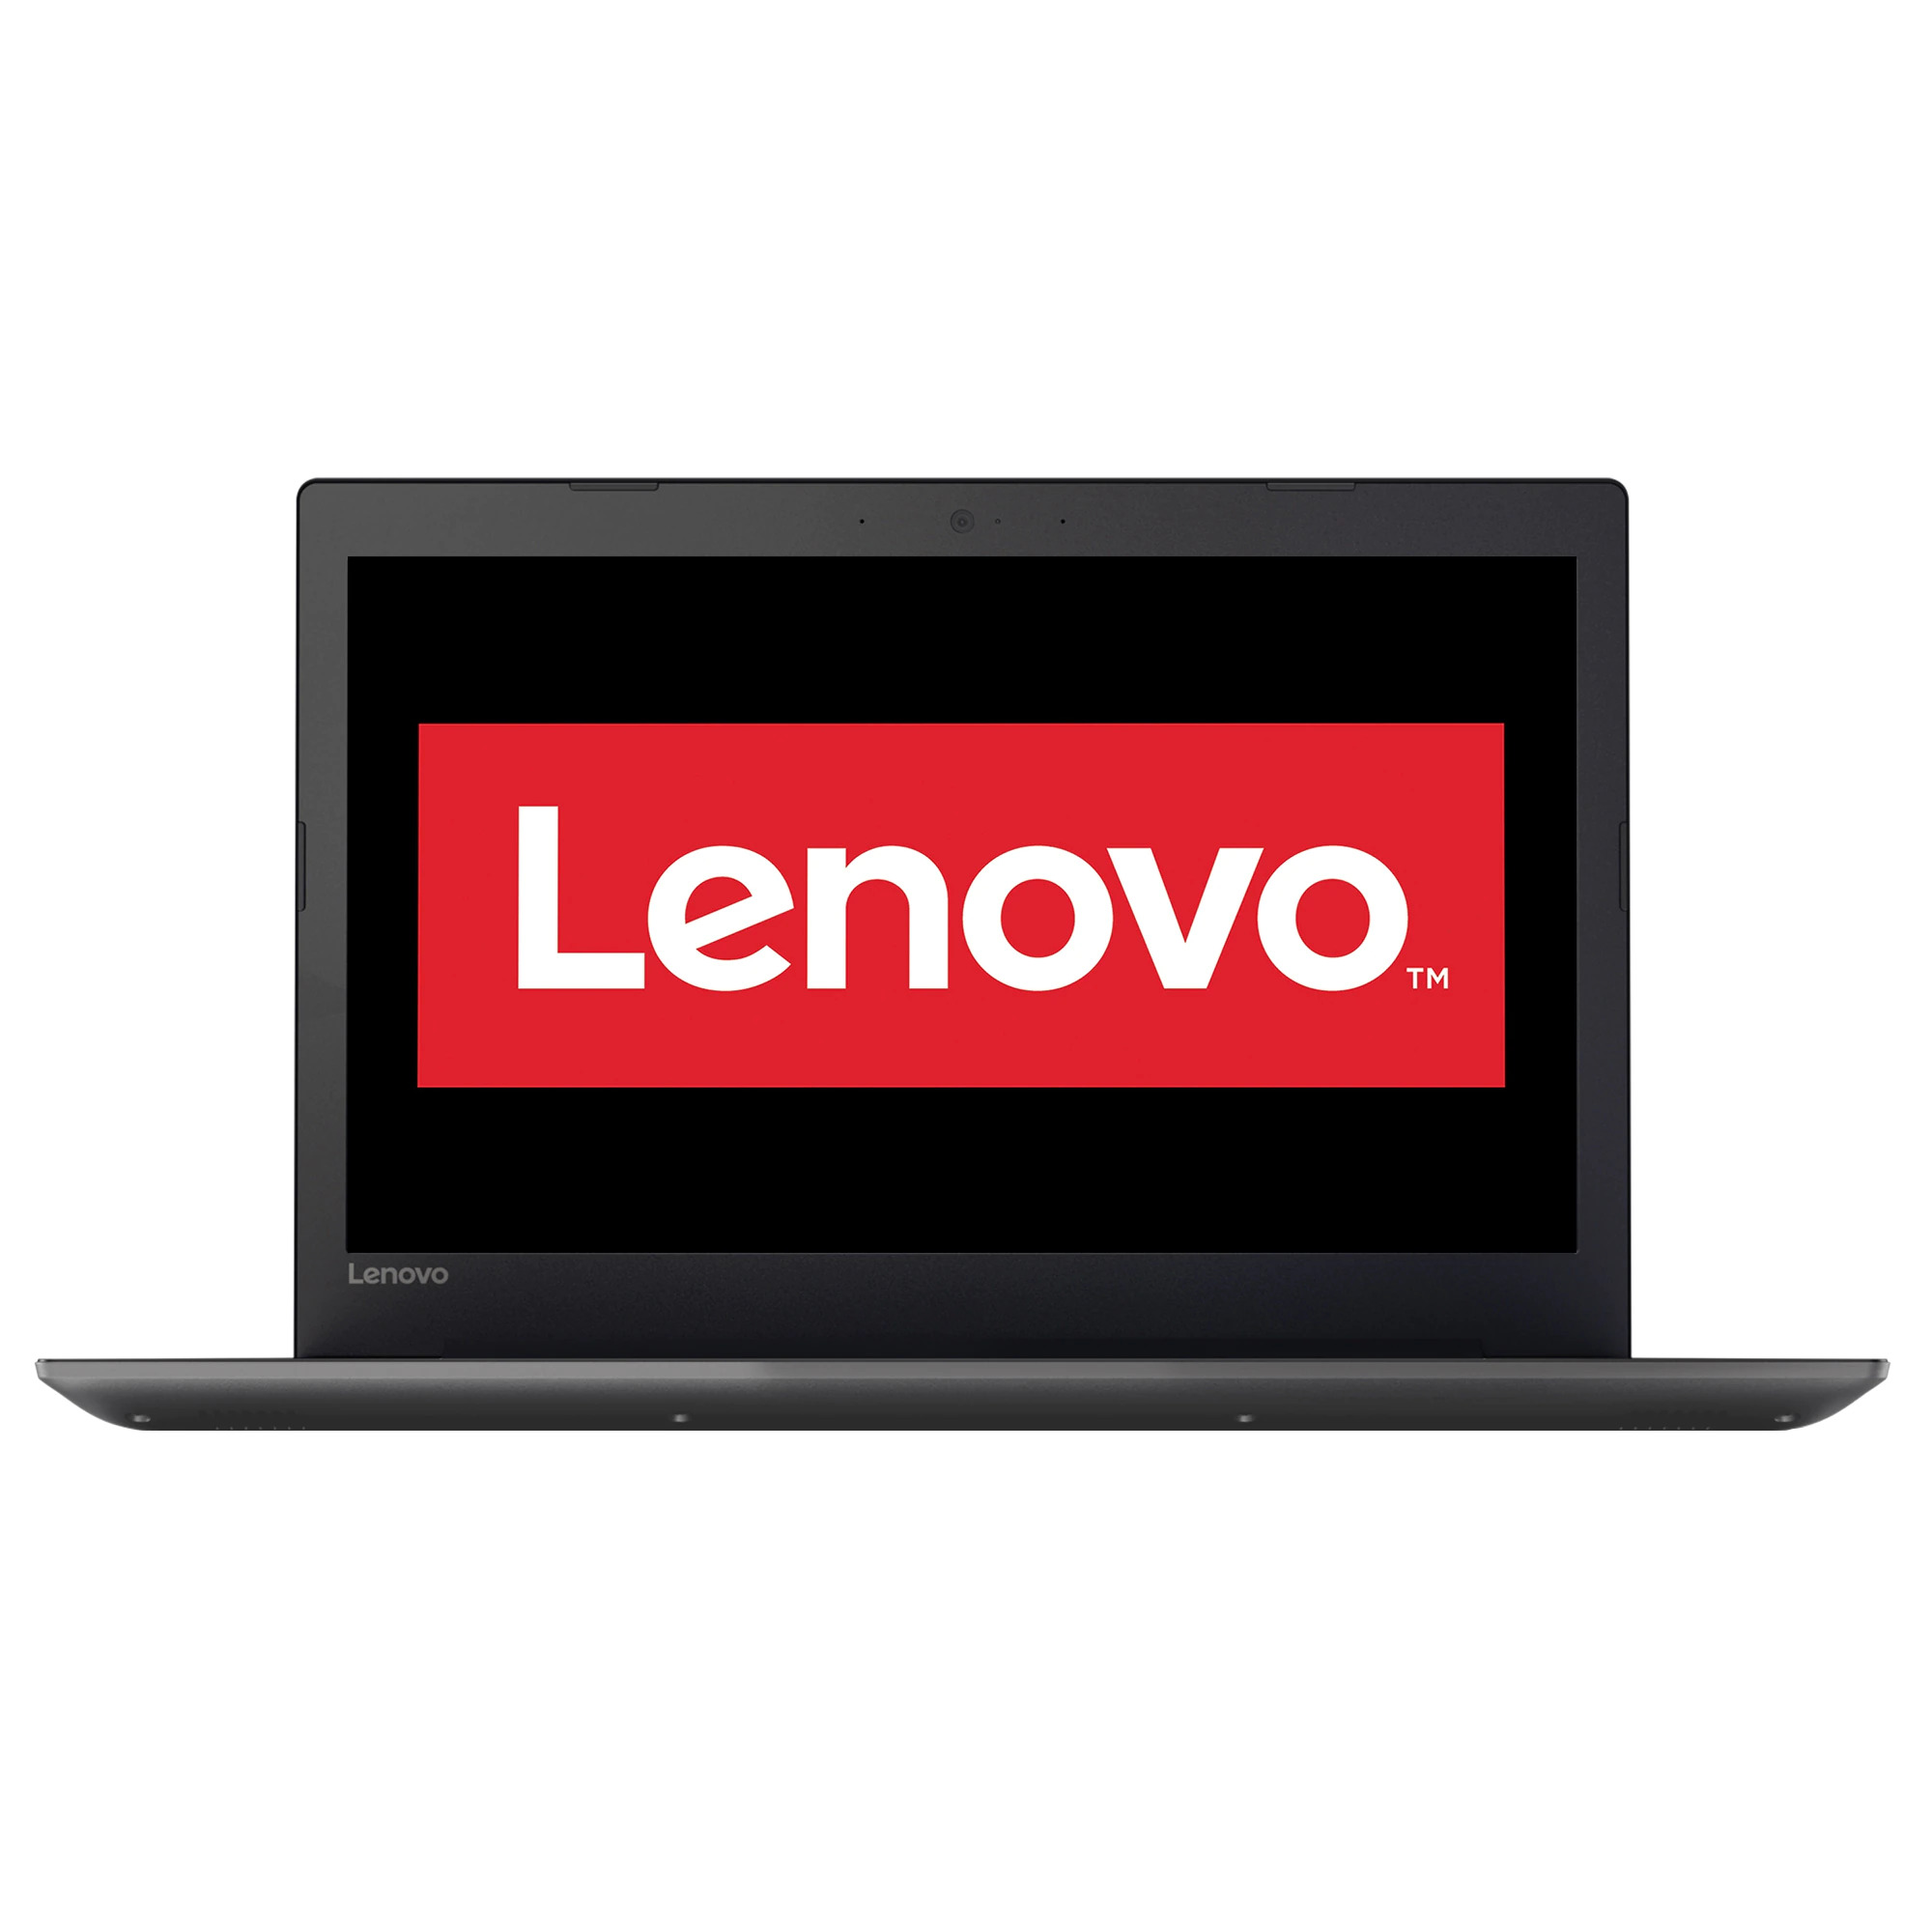 Laptop Second Hand Lenovo IdeaPad 320-15AST, AMD A6-9220 2.50-2.90GHz, 8GB DDR4, 256GB SSD, 15.6 Inch Full HD, Webcam